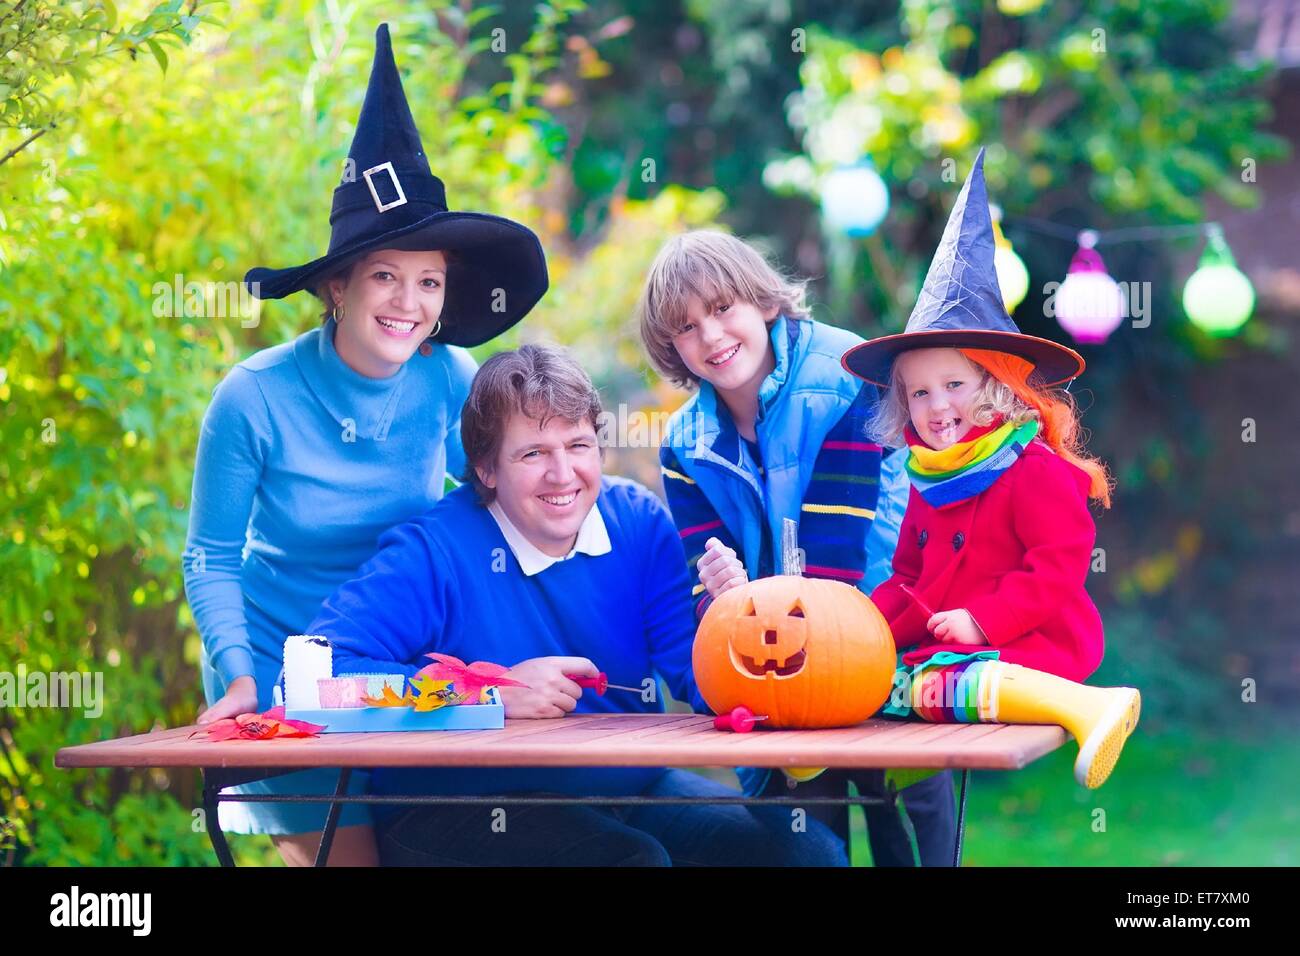 Familia Feliz, los padres con dos niños vestidos de traje y sombrero de bruja la celebración de Halloween y calabaza tallado en el jardín Foto de stock